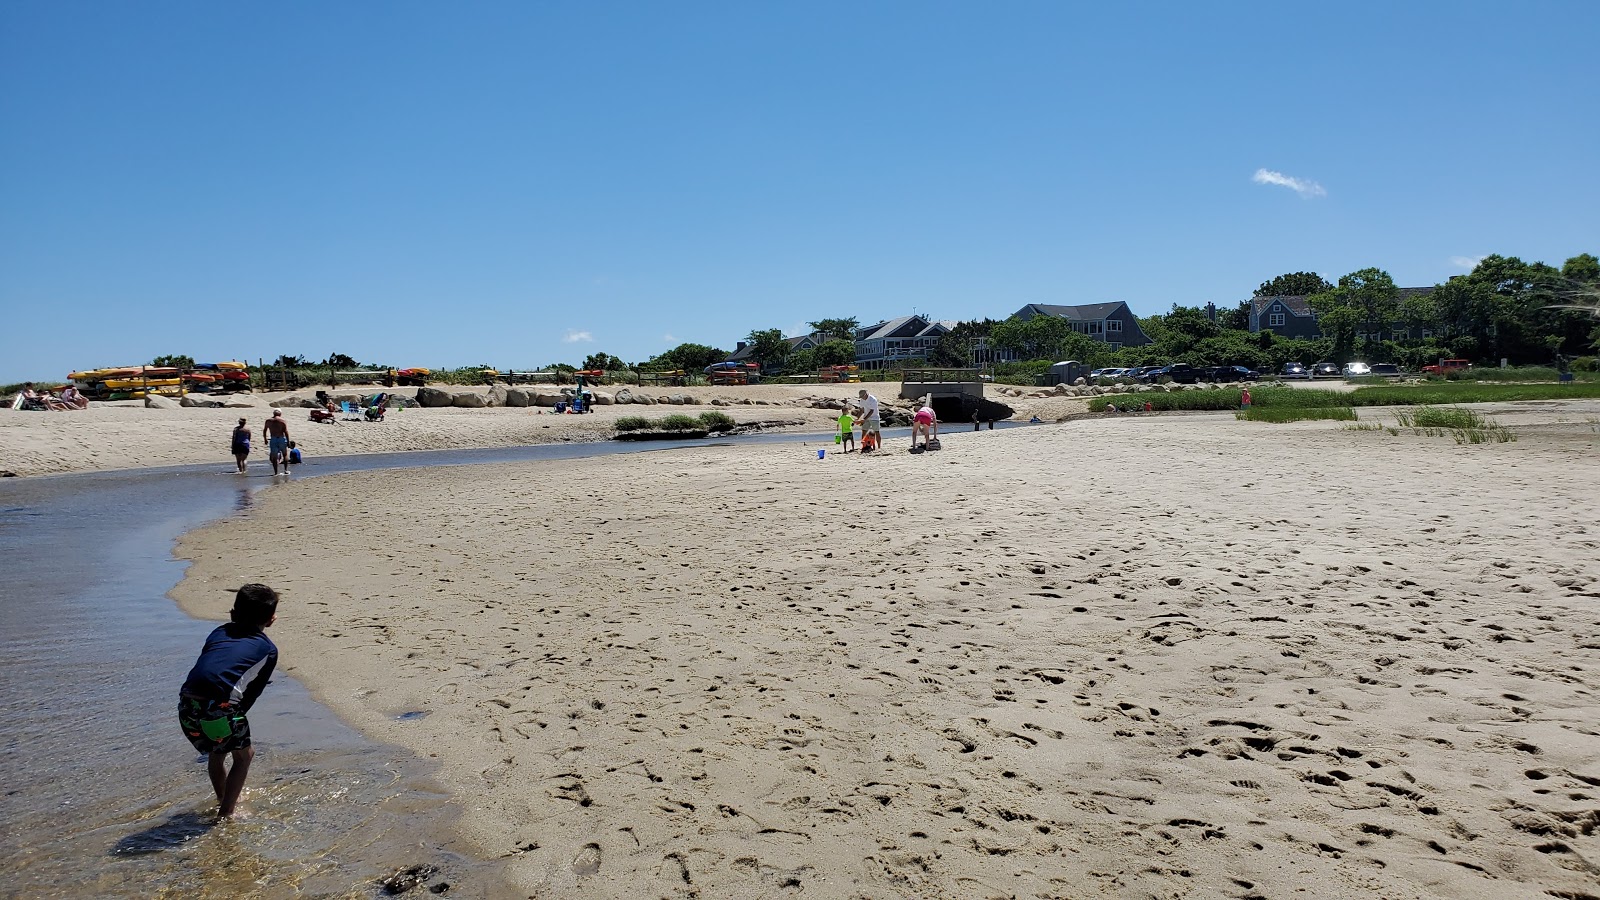 Mant's Landing beach'in fotoğrafı geniş plaj ile birlikte